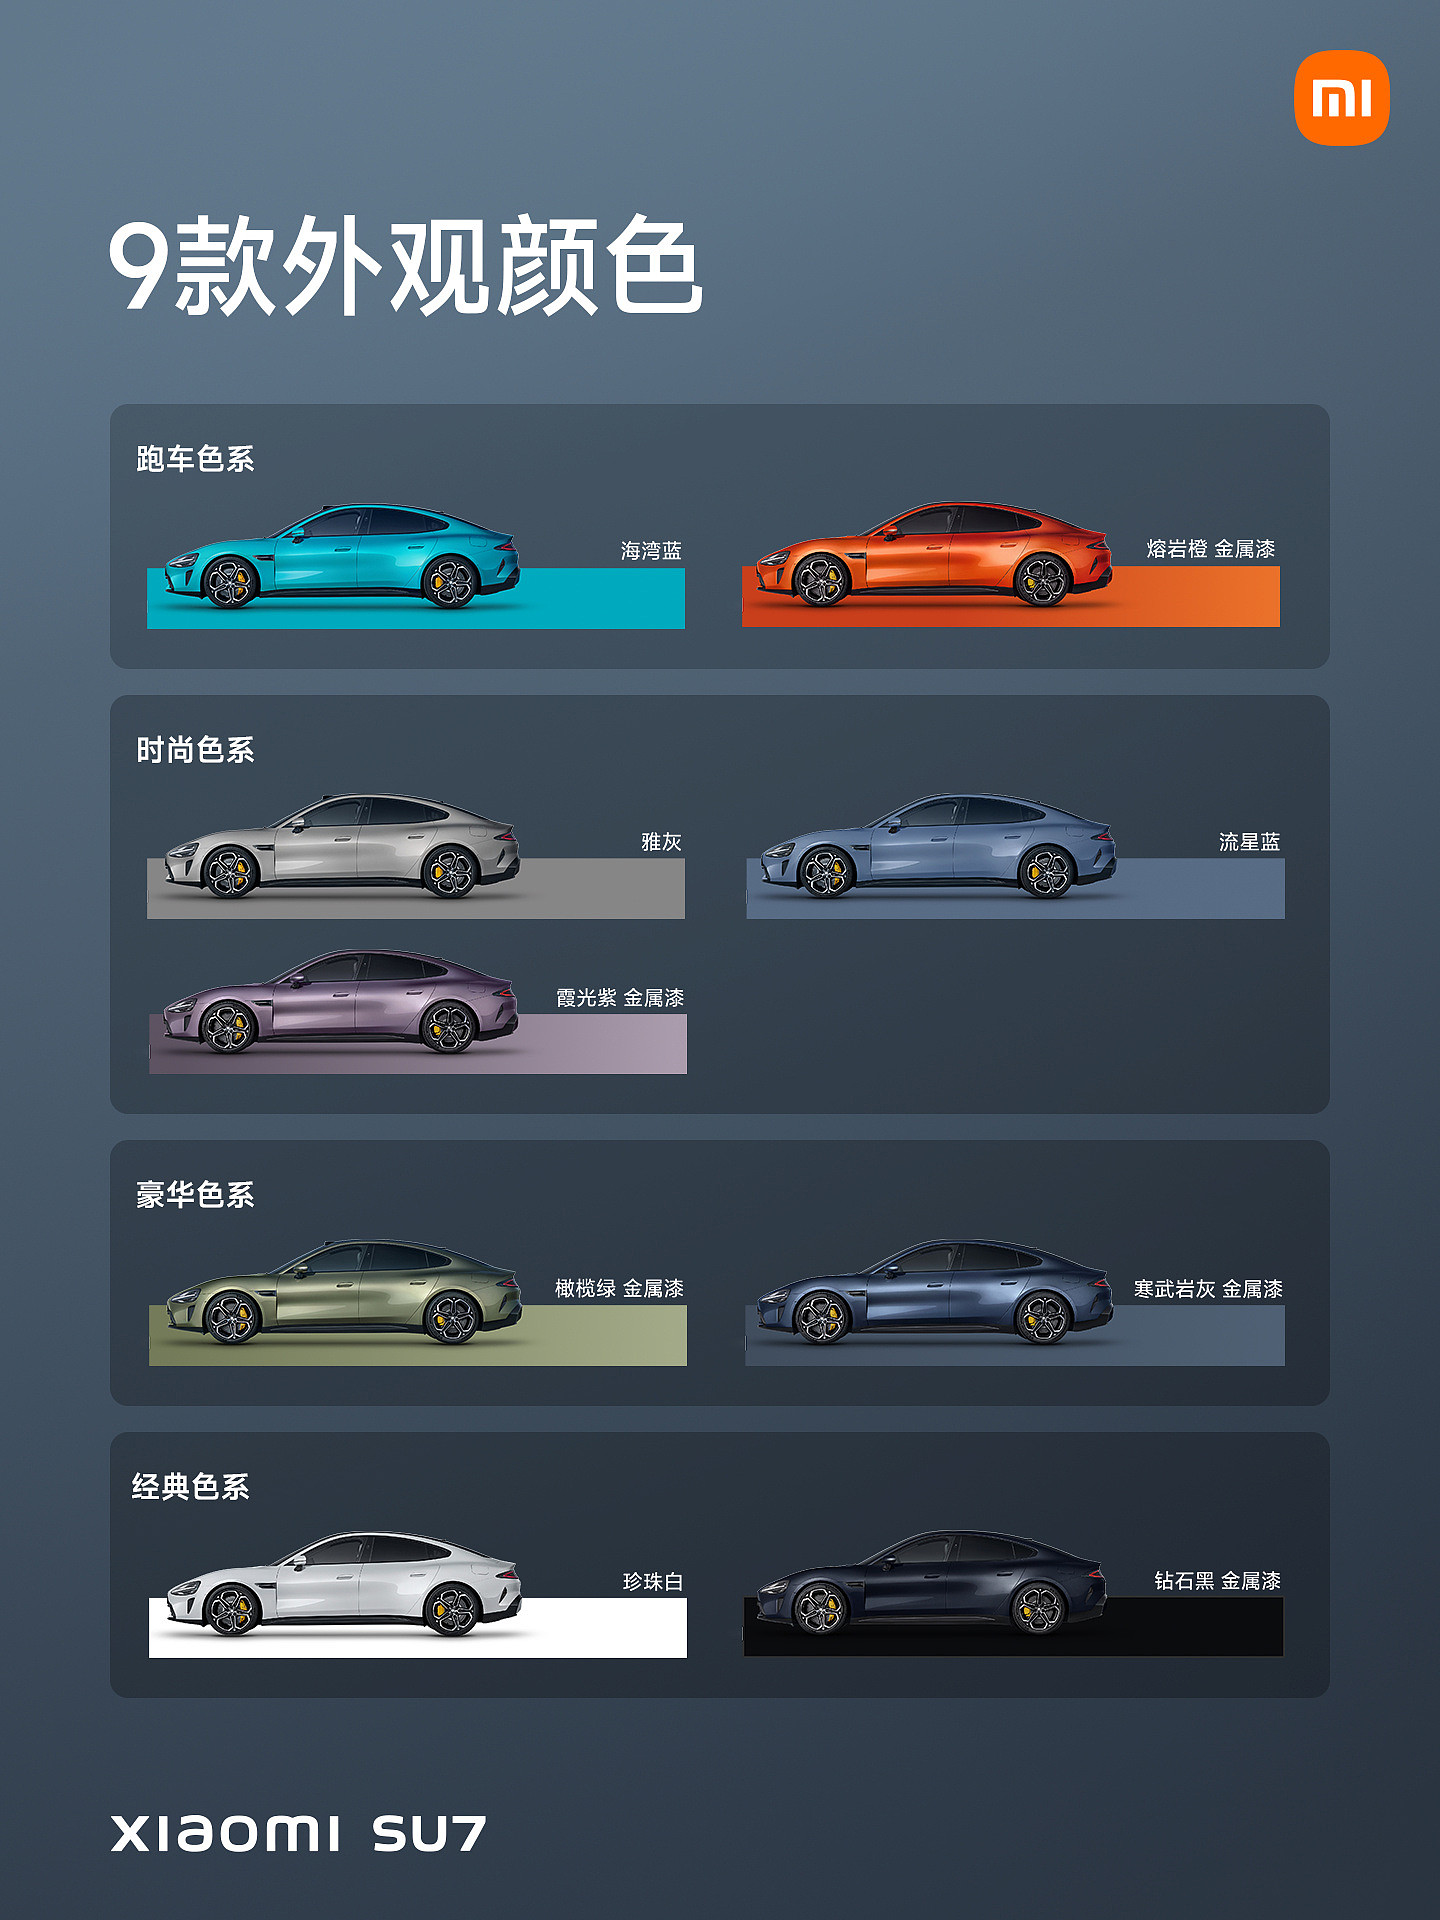 消息称小米汽车 SU7 将于下半年推出更多配色 - 1